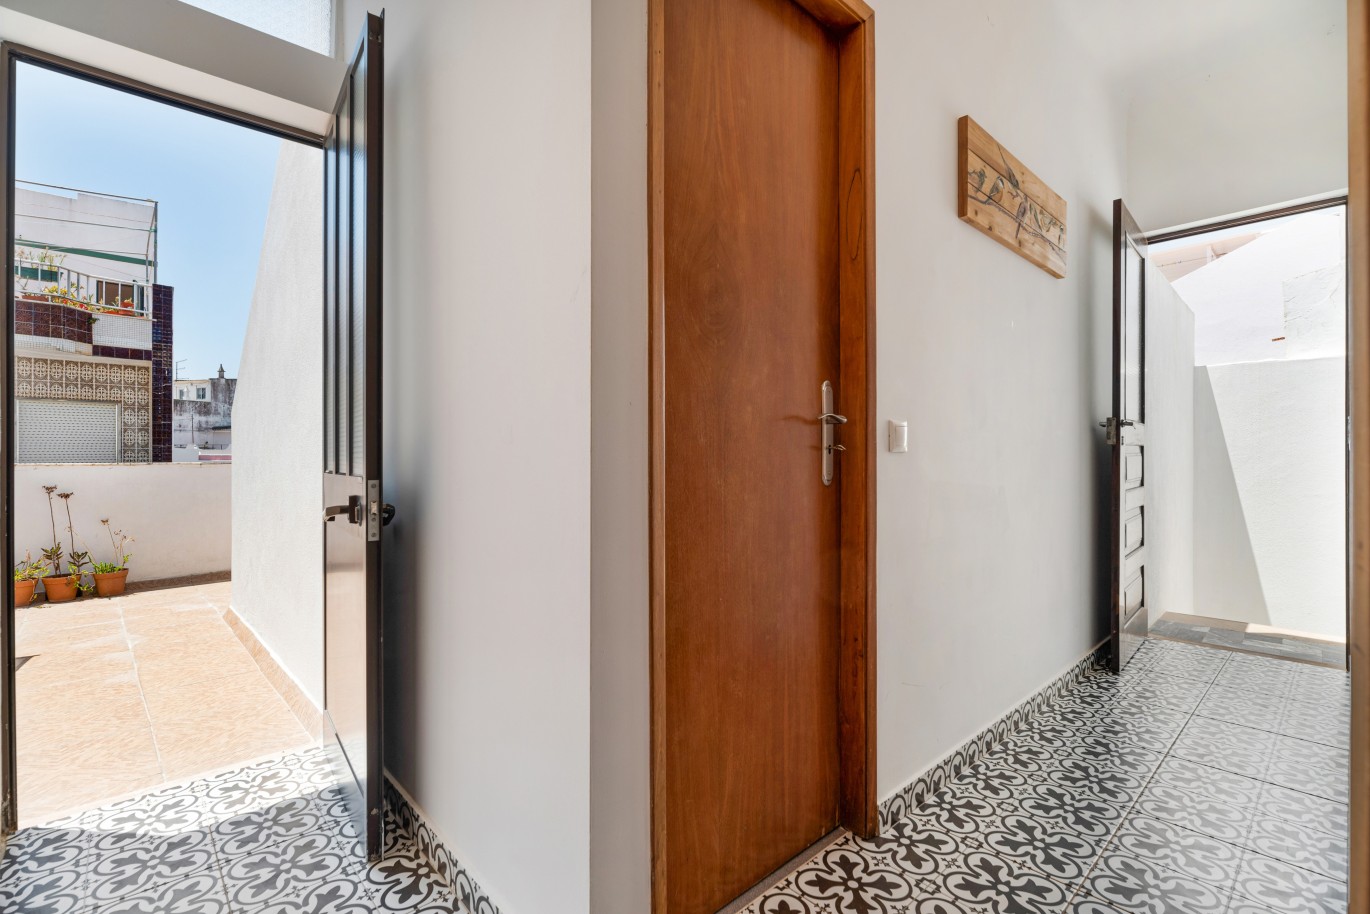 3 bedroom Townhouse for sale in Alvor, Algarve_231193